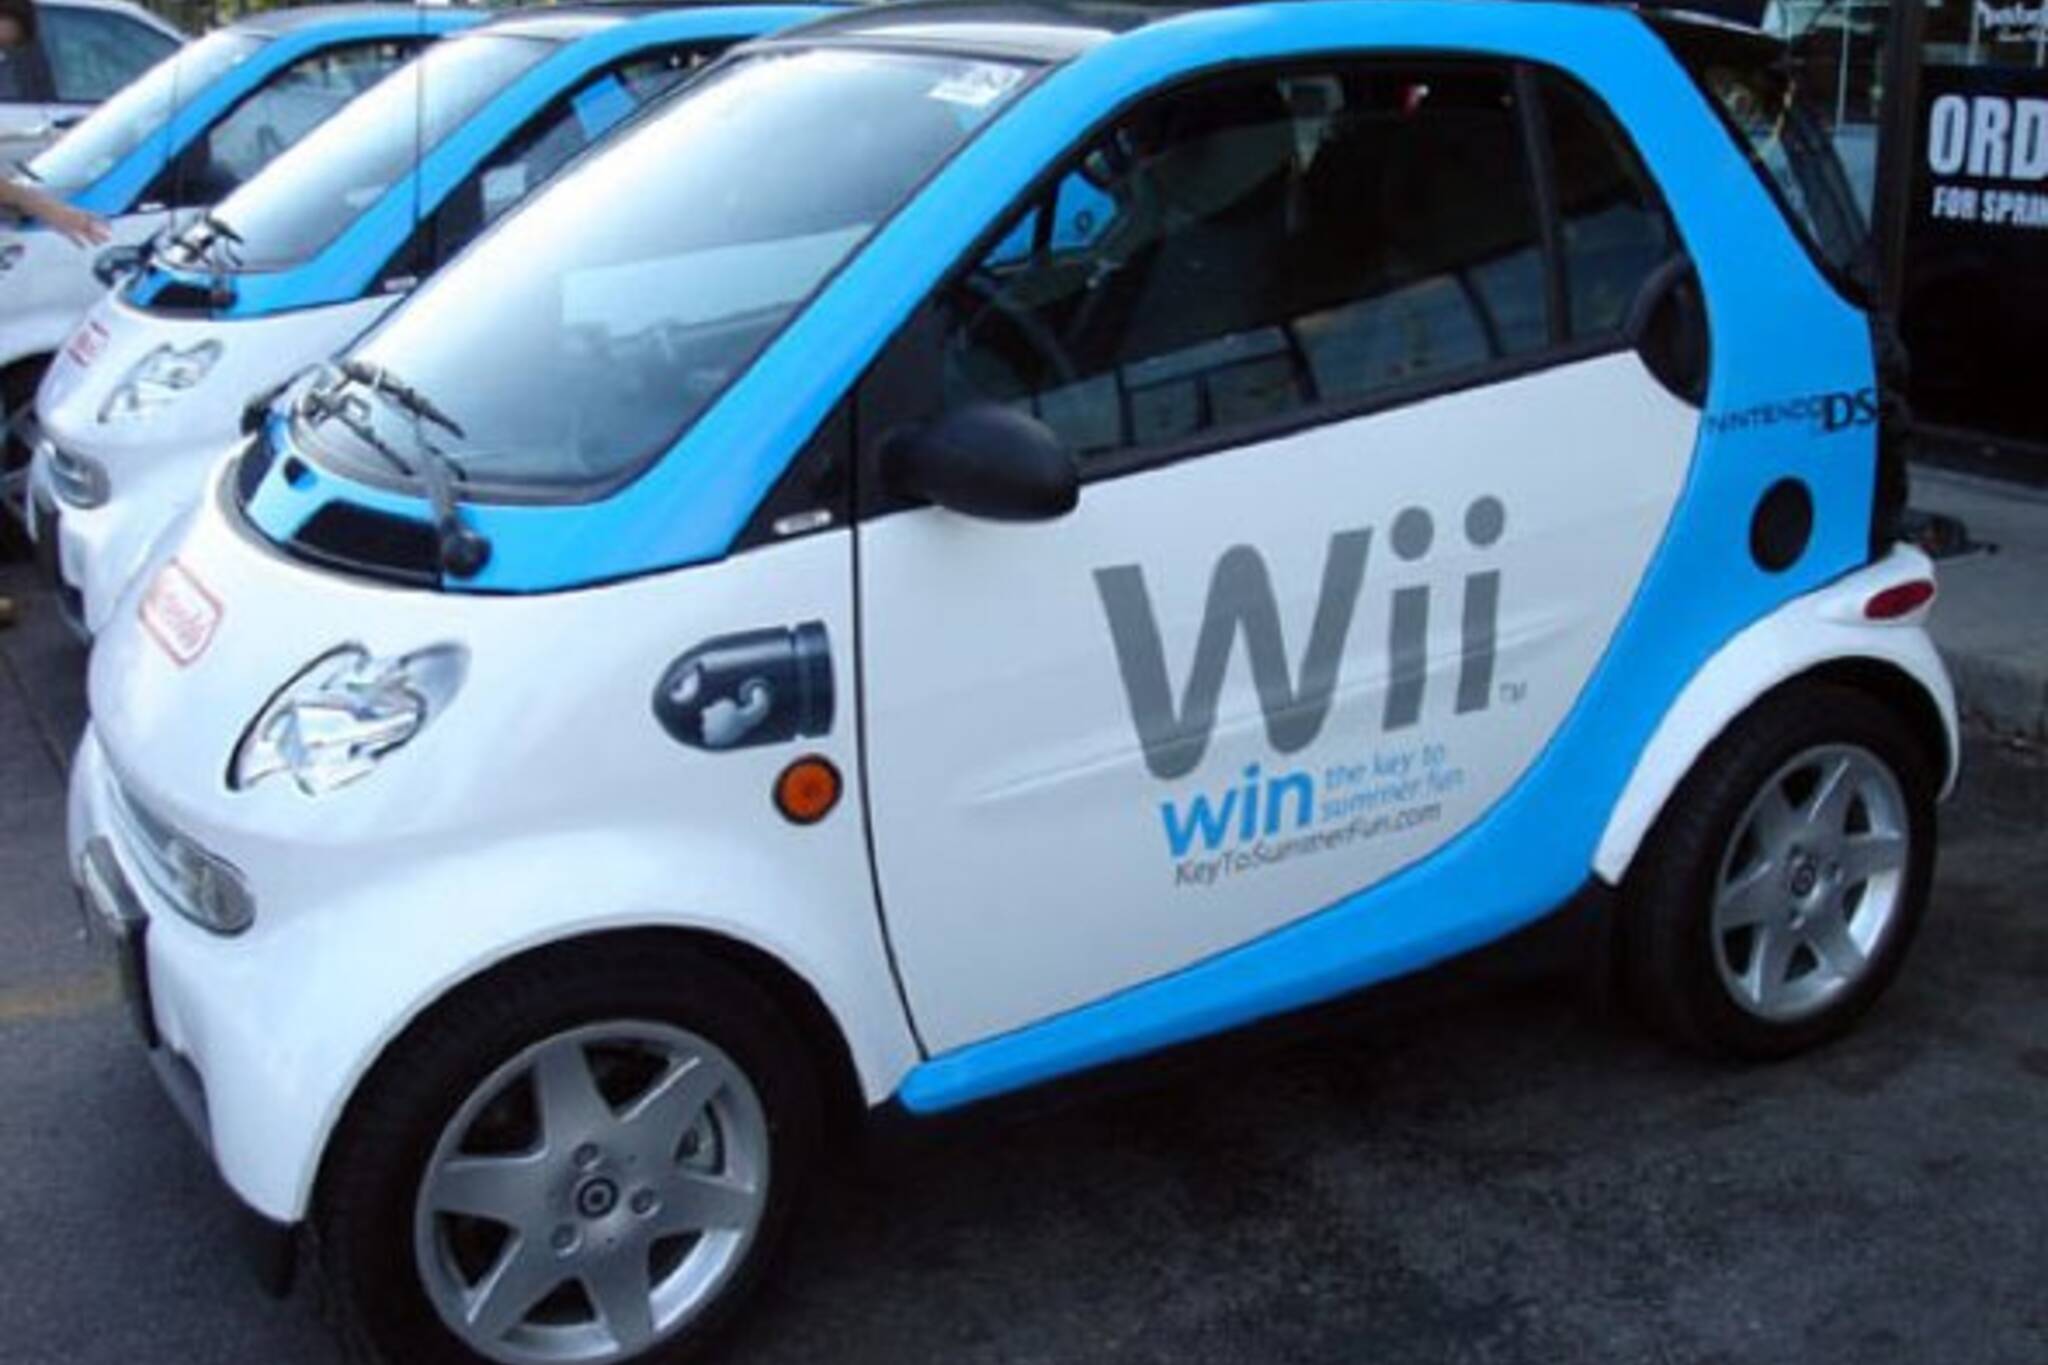 Slang Kleverig Binnenshuis Toronto Gets Wii on Wheels